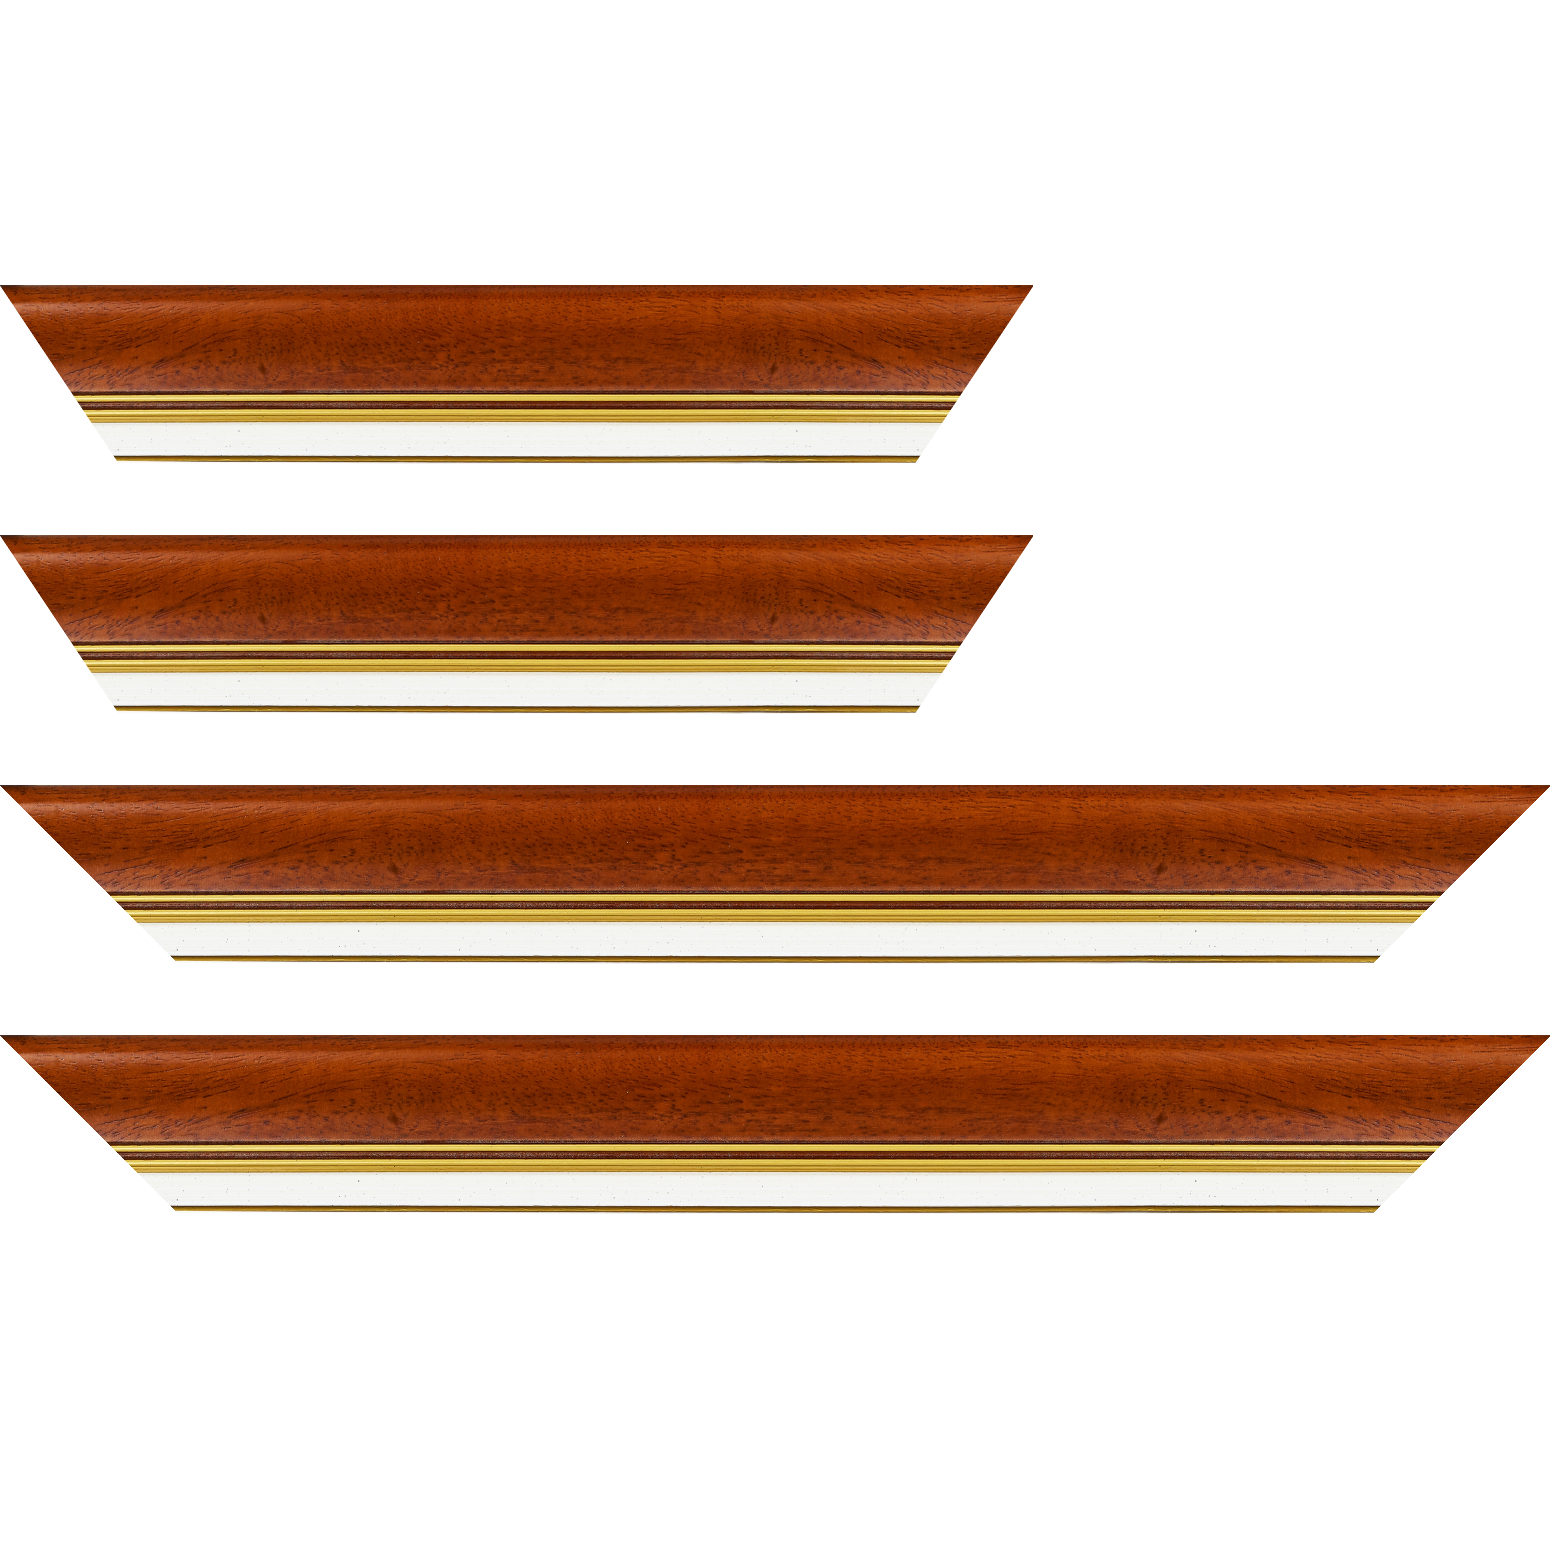 Baguette bois profil incurvé largeur 5.7cm de couleur marron ton bois marie louise blanche mouchetée filet or intégré - 59.4x84.1